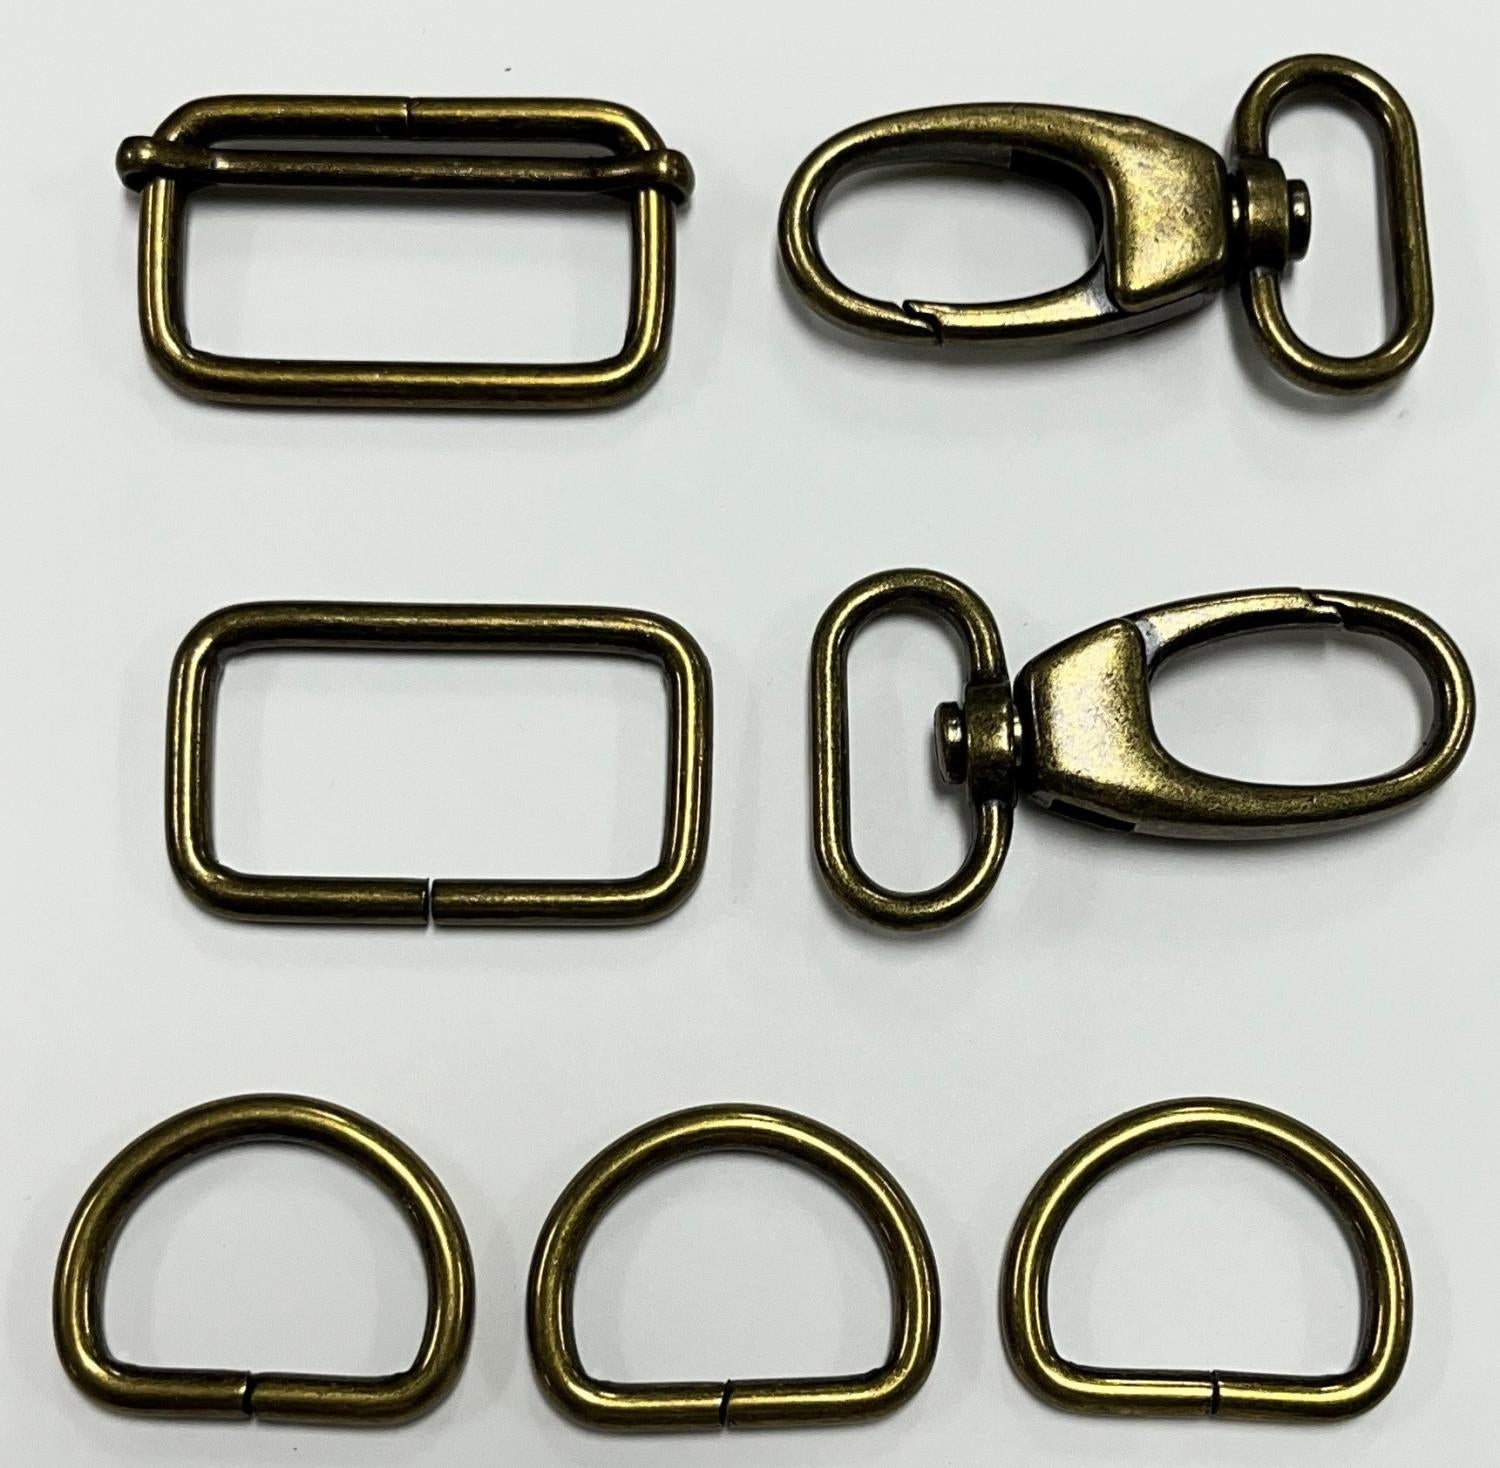 Mav Bag Hardware Kit - 1in - Antique Brass